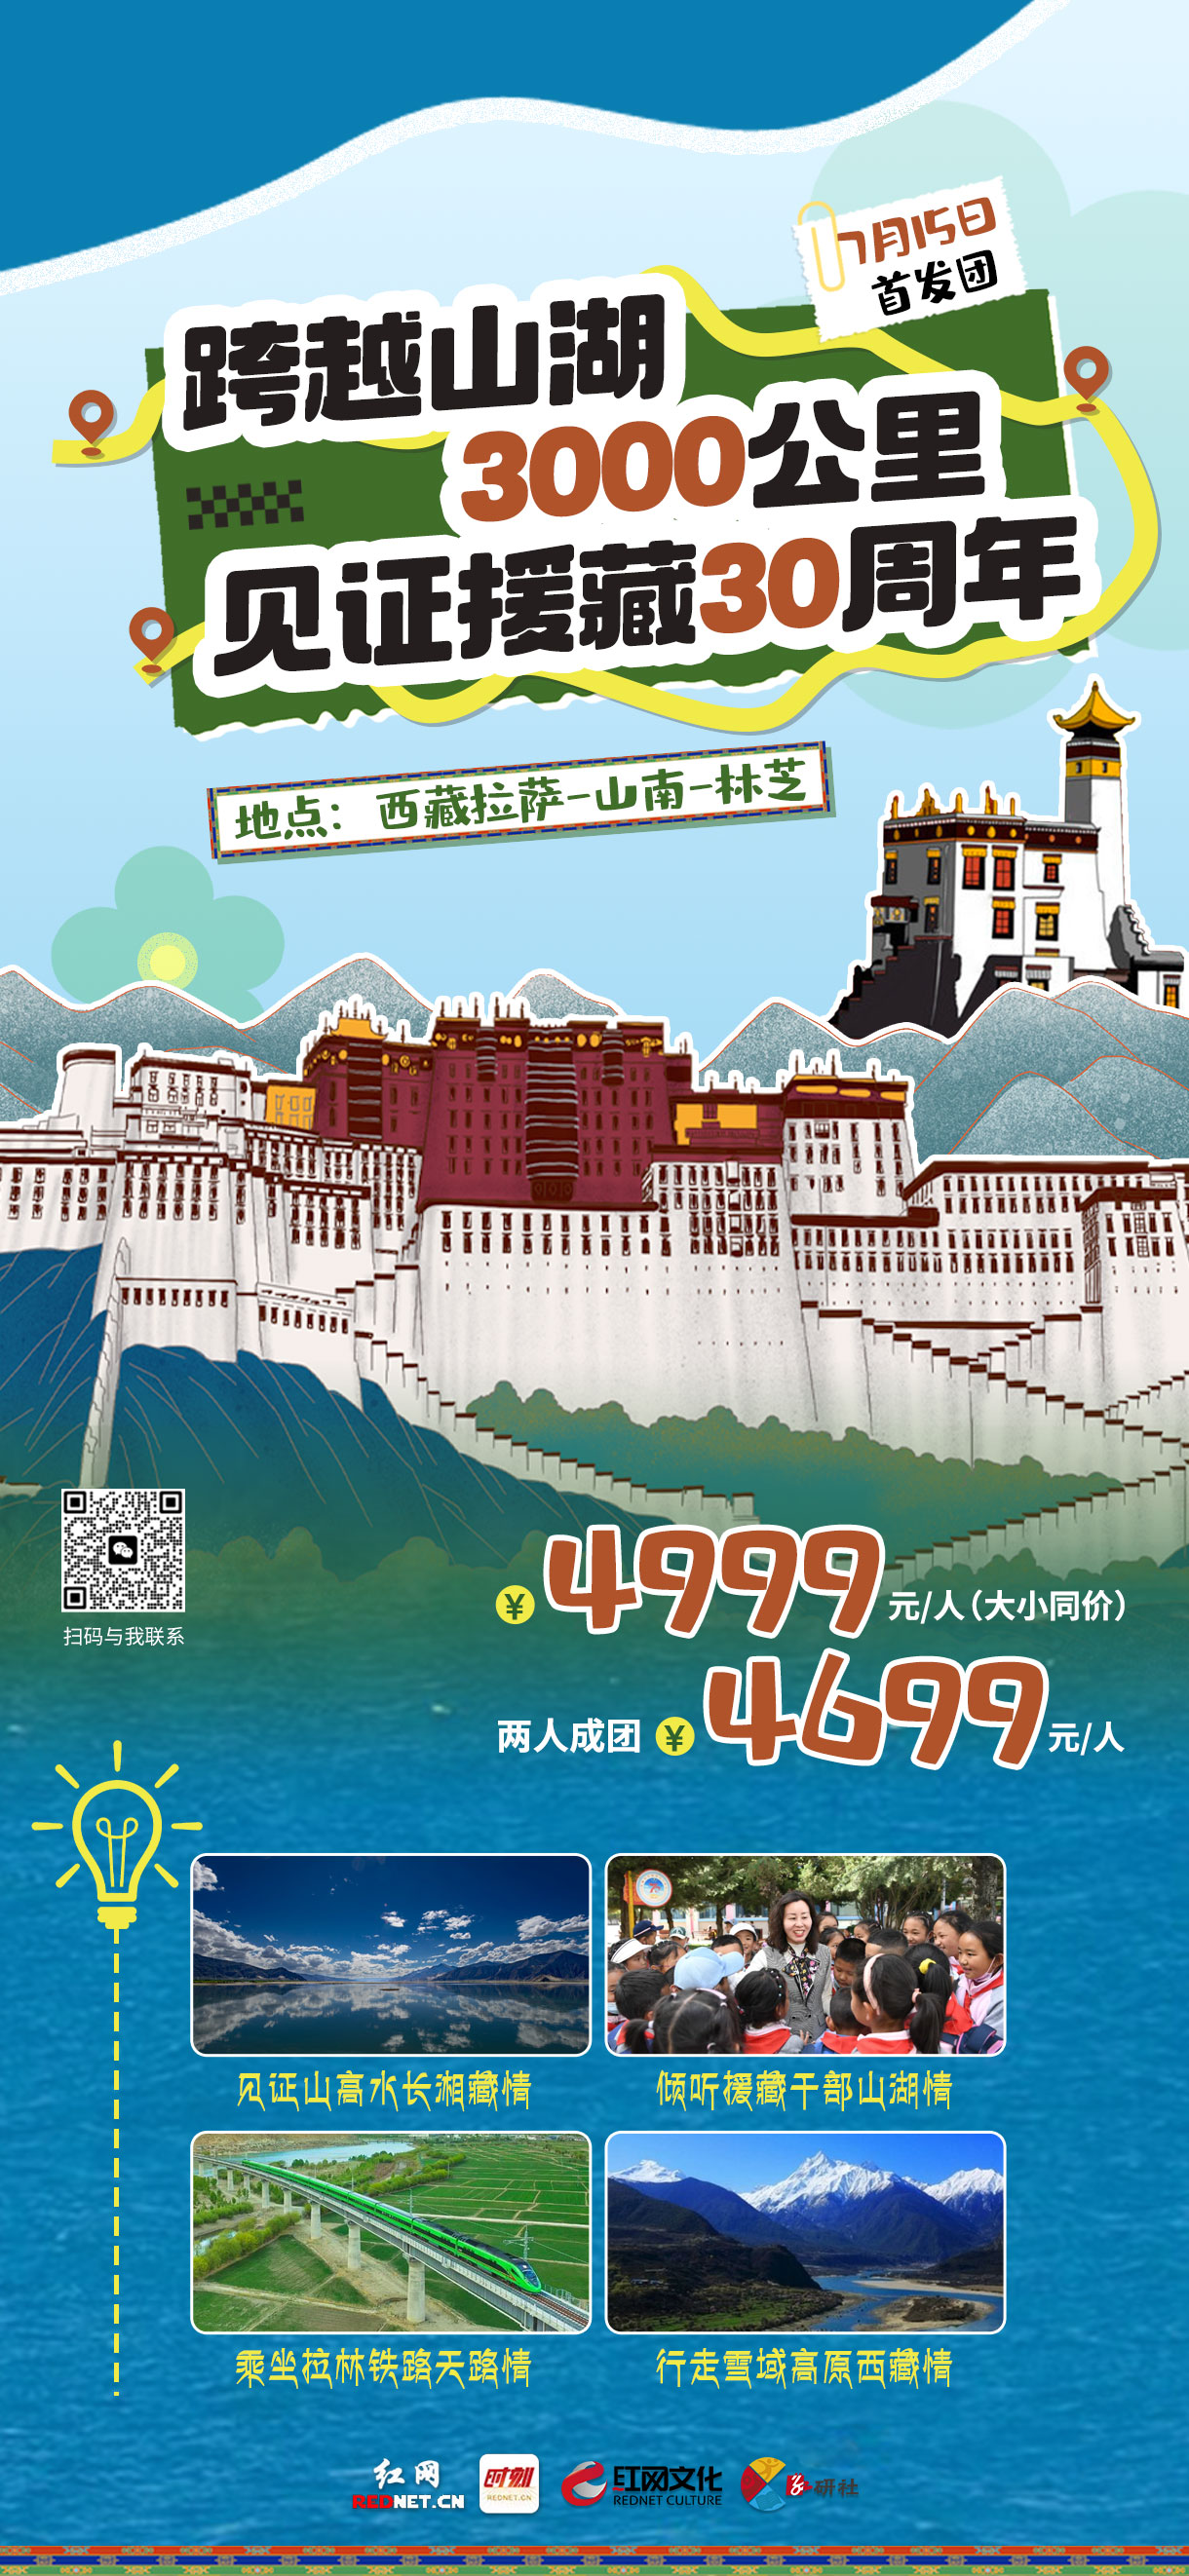 红网小记者丨 援藏30周年·见证“山湖”情 ，游学西藏夏令营邀你加入